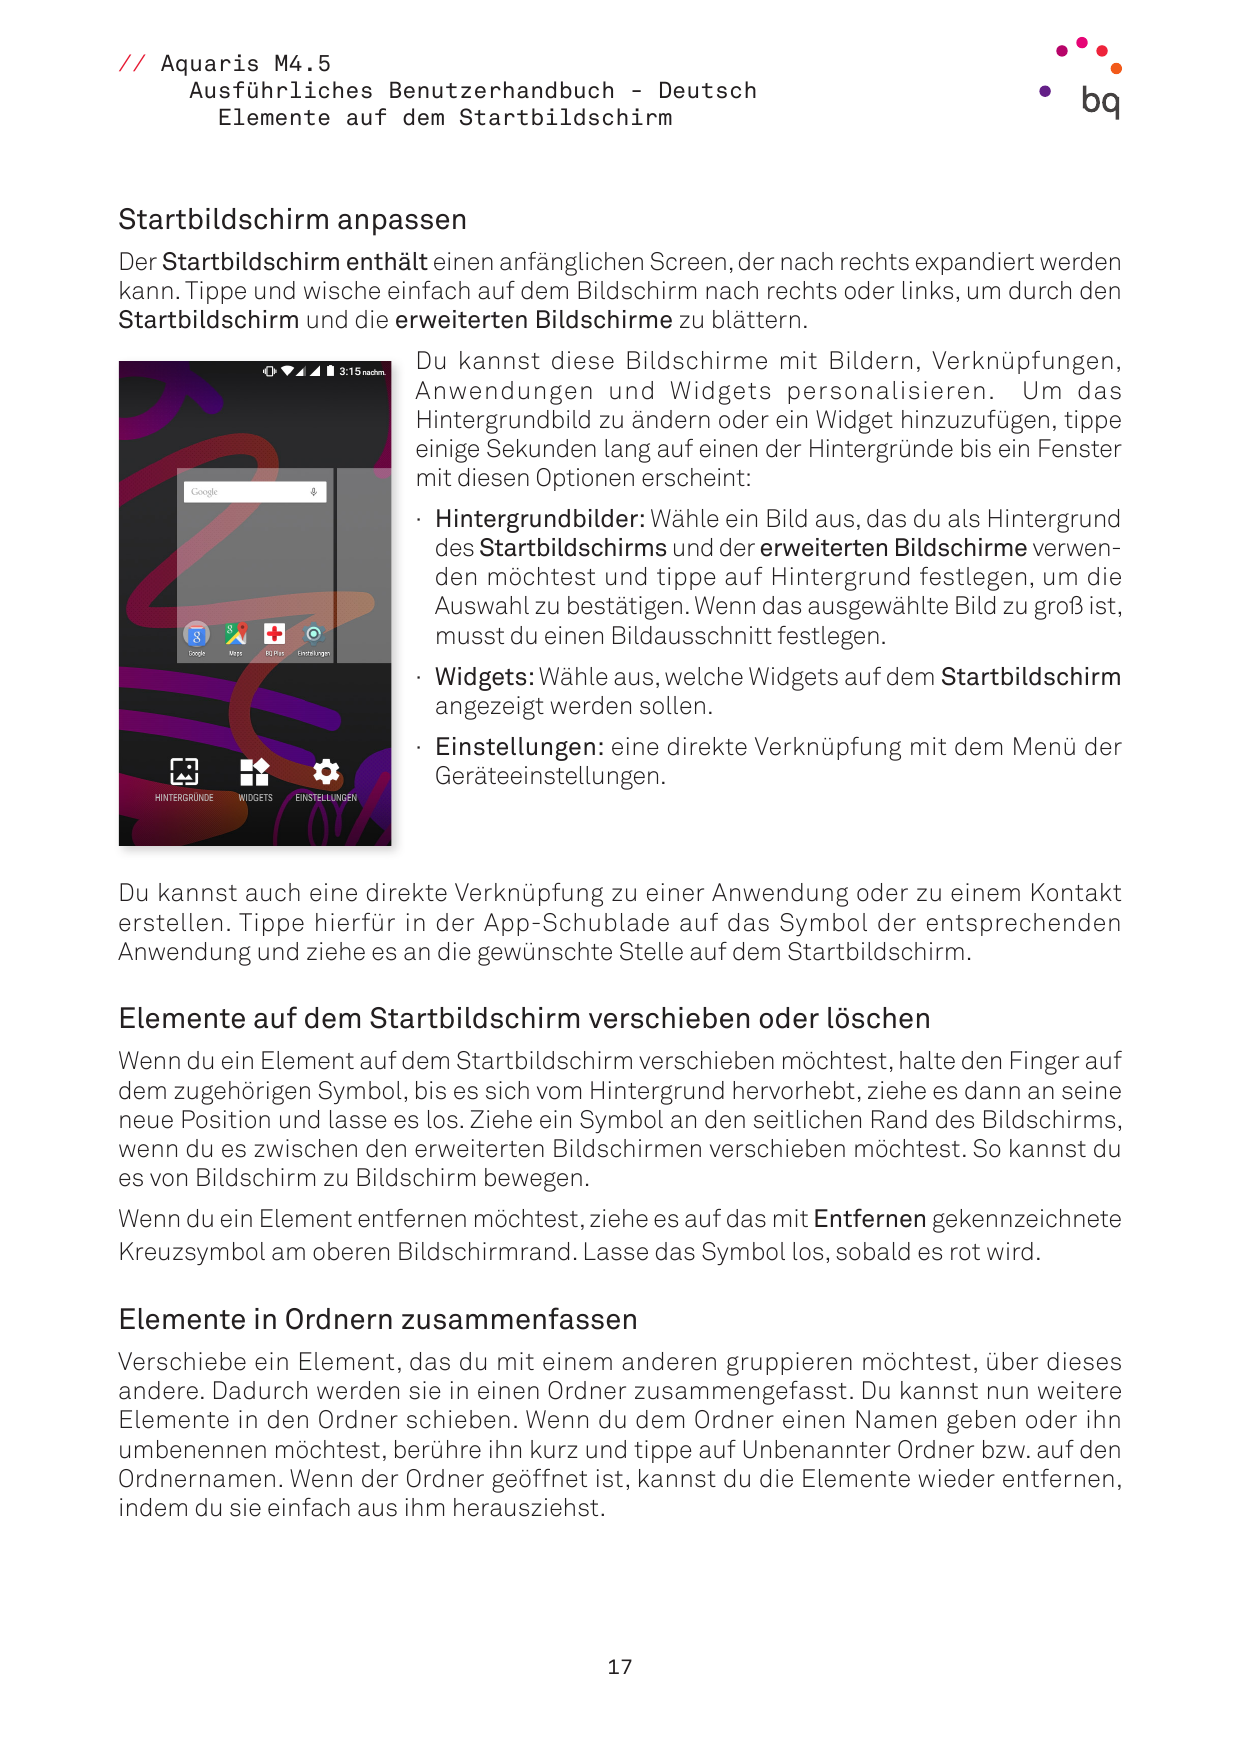 // Aquaris M4.5Ausführliches Benutzerhandbuch - DeutschElemente auf dem StartbildschirmStartbildschirm anpassenDer Startbildschi